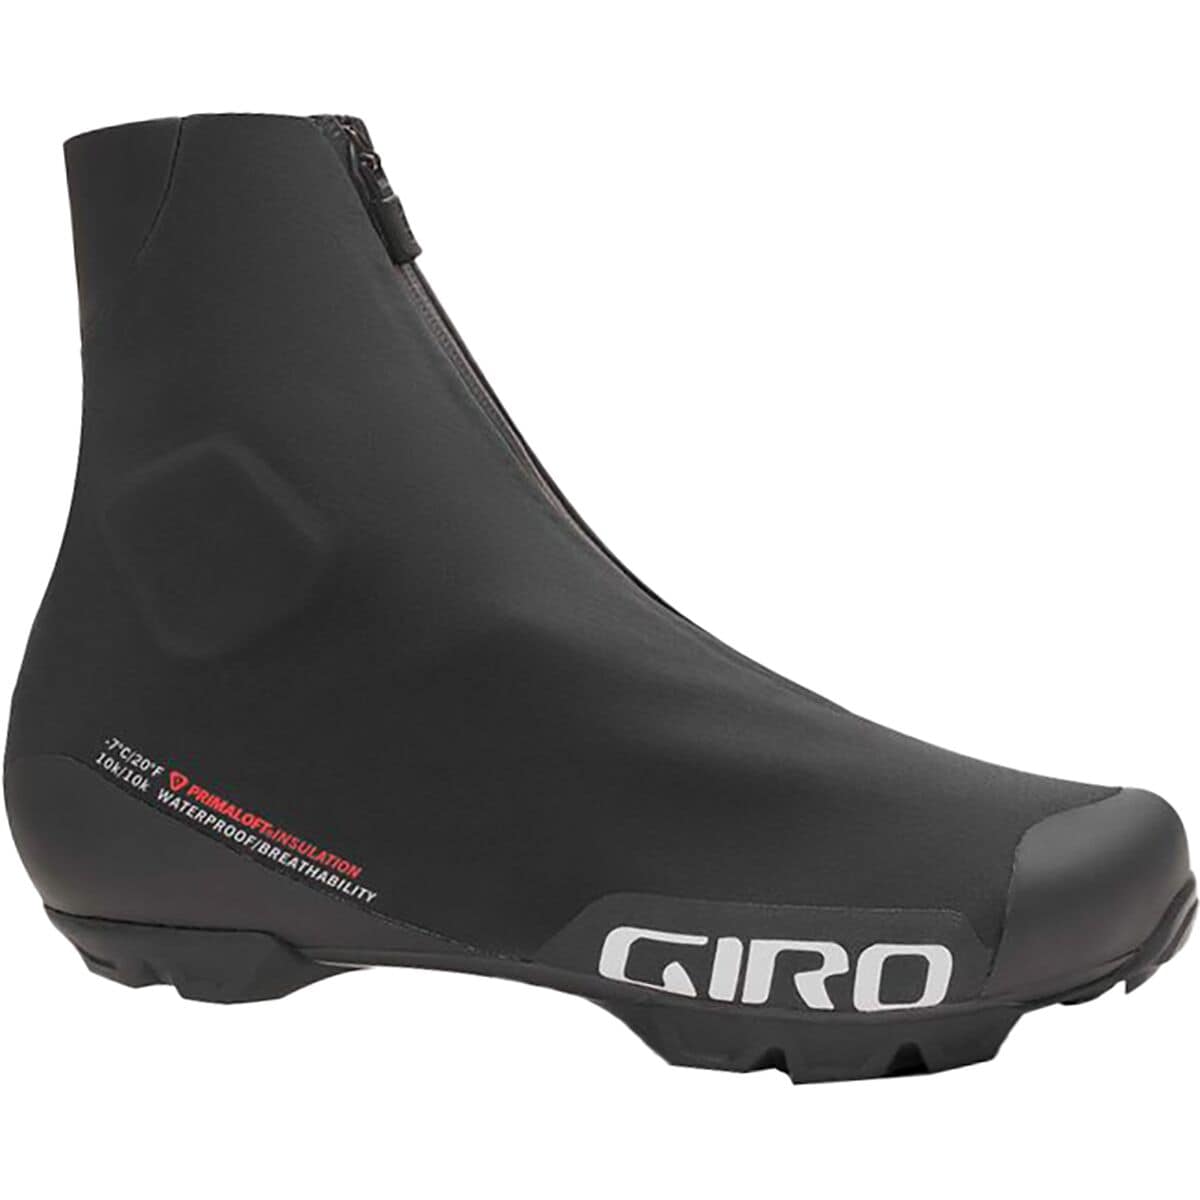 Giro Blaze Cycling Shoe - Men's Black, 46.0